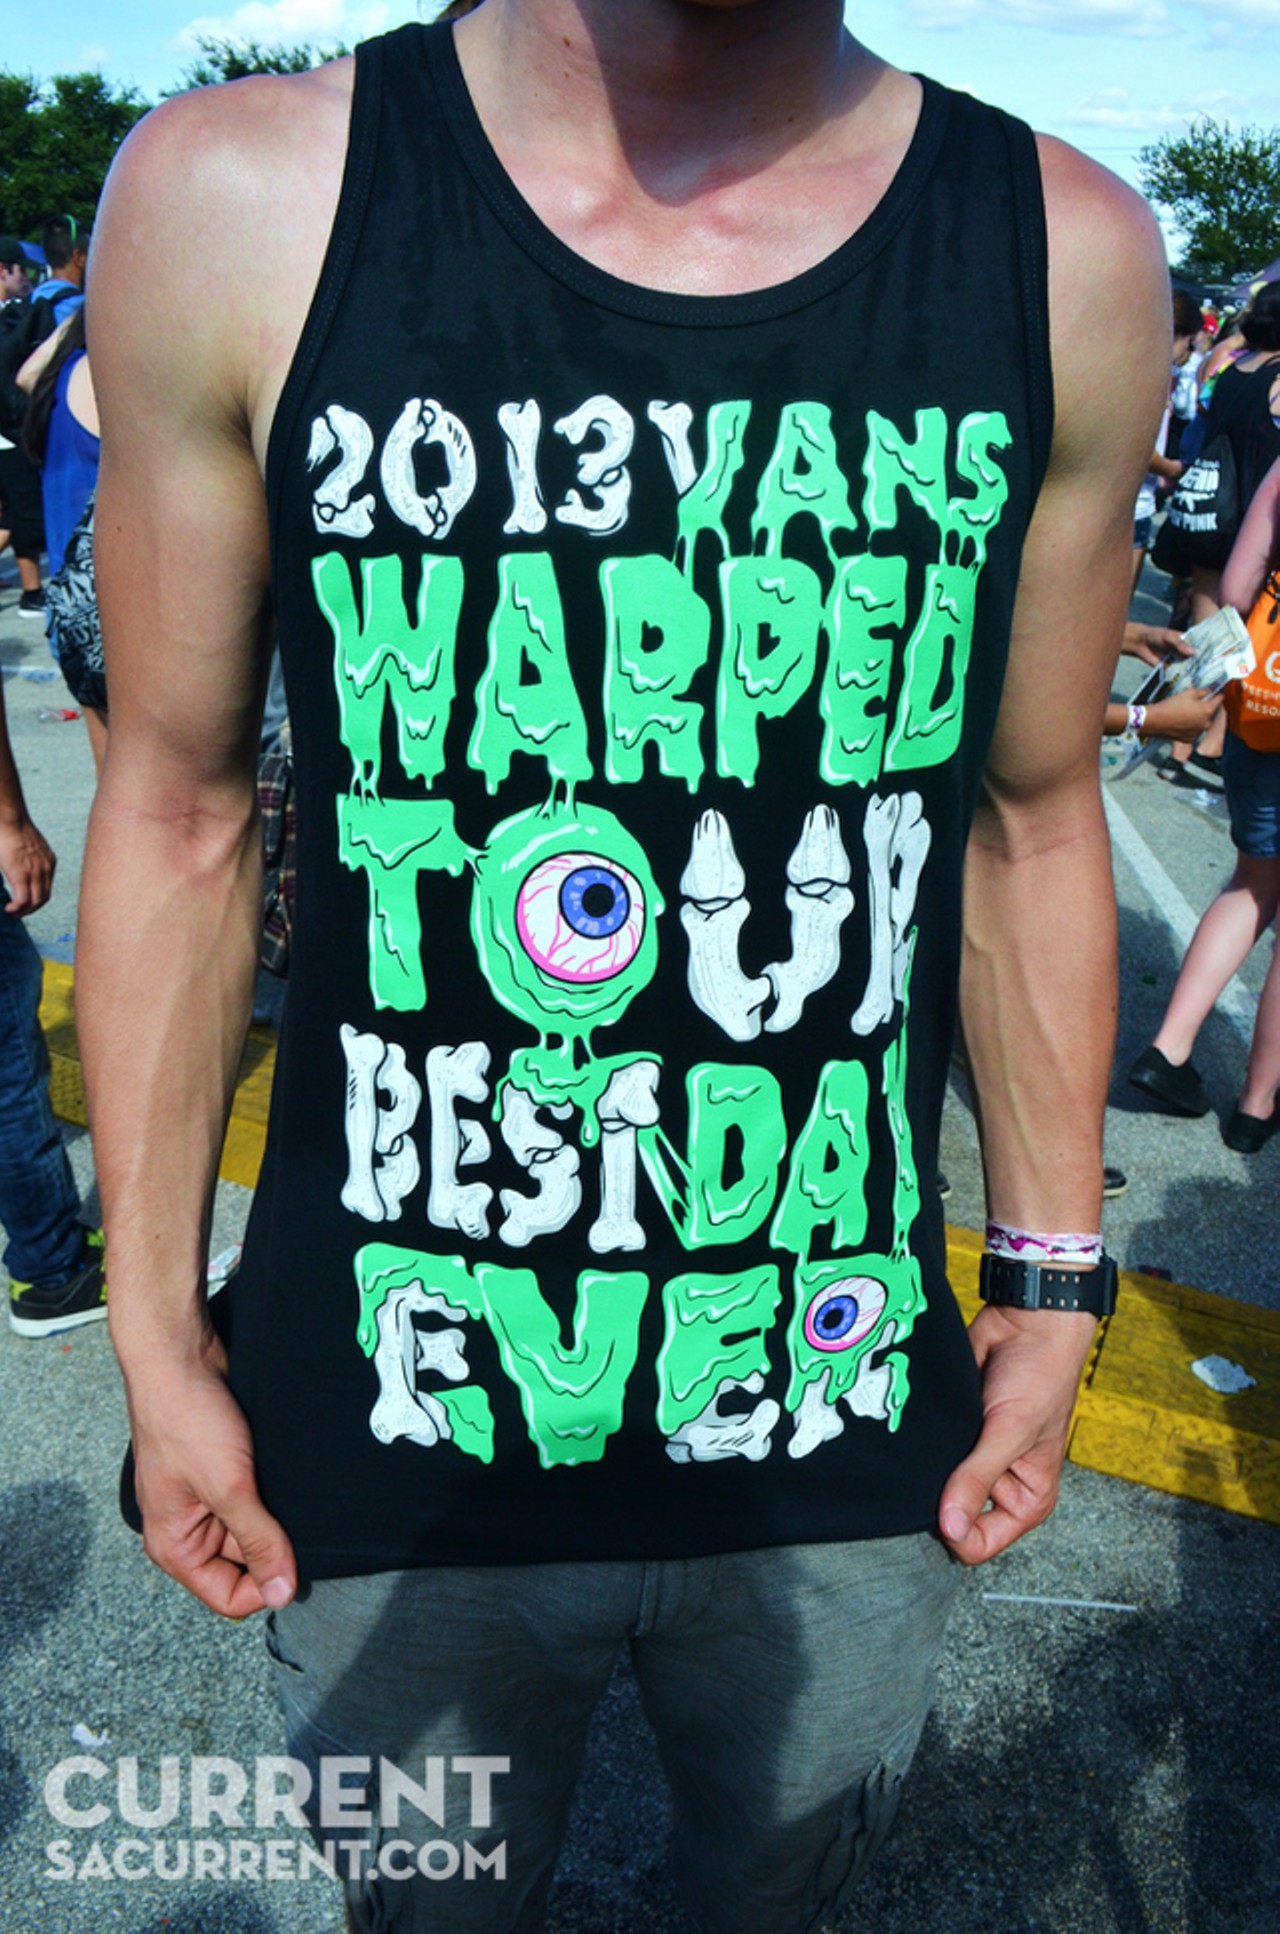 Best Day Ever: Vans Warped Tour 2013 San Antonio